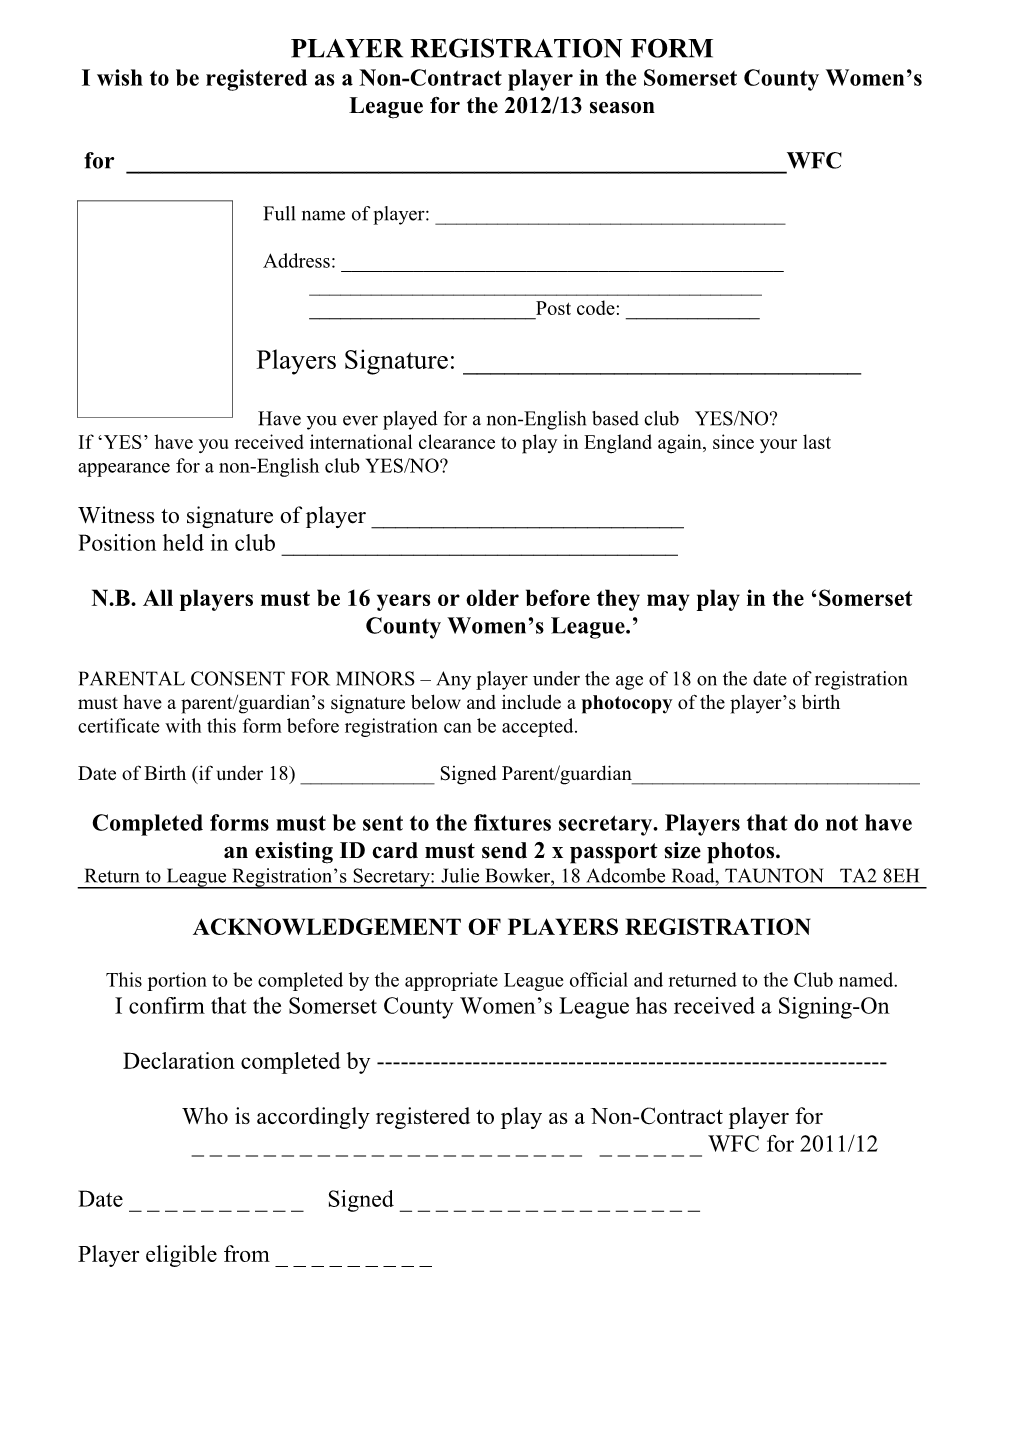 Player Registration Form